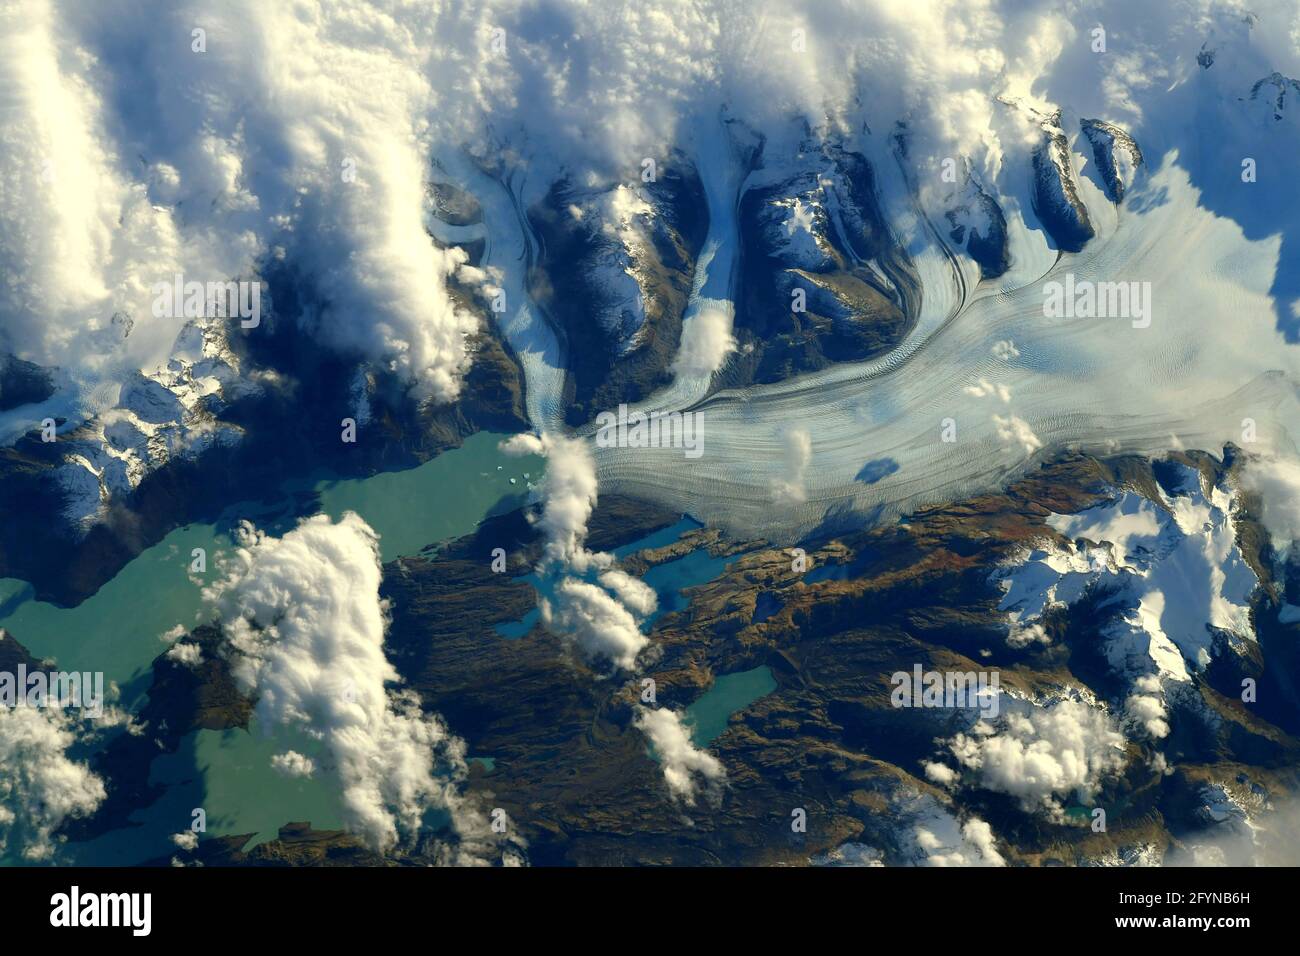 GHIACCIAIO DI UPSALA, ARGENTINA - 08 maggio 2021 - Vista aerea del Ghiacciaio di Upsala nelle Ande dell'Argentina fotografata dalla International Space Statio Foto Stock